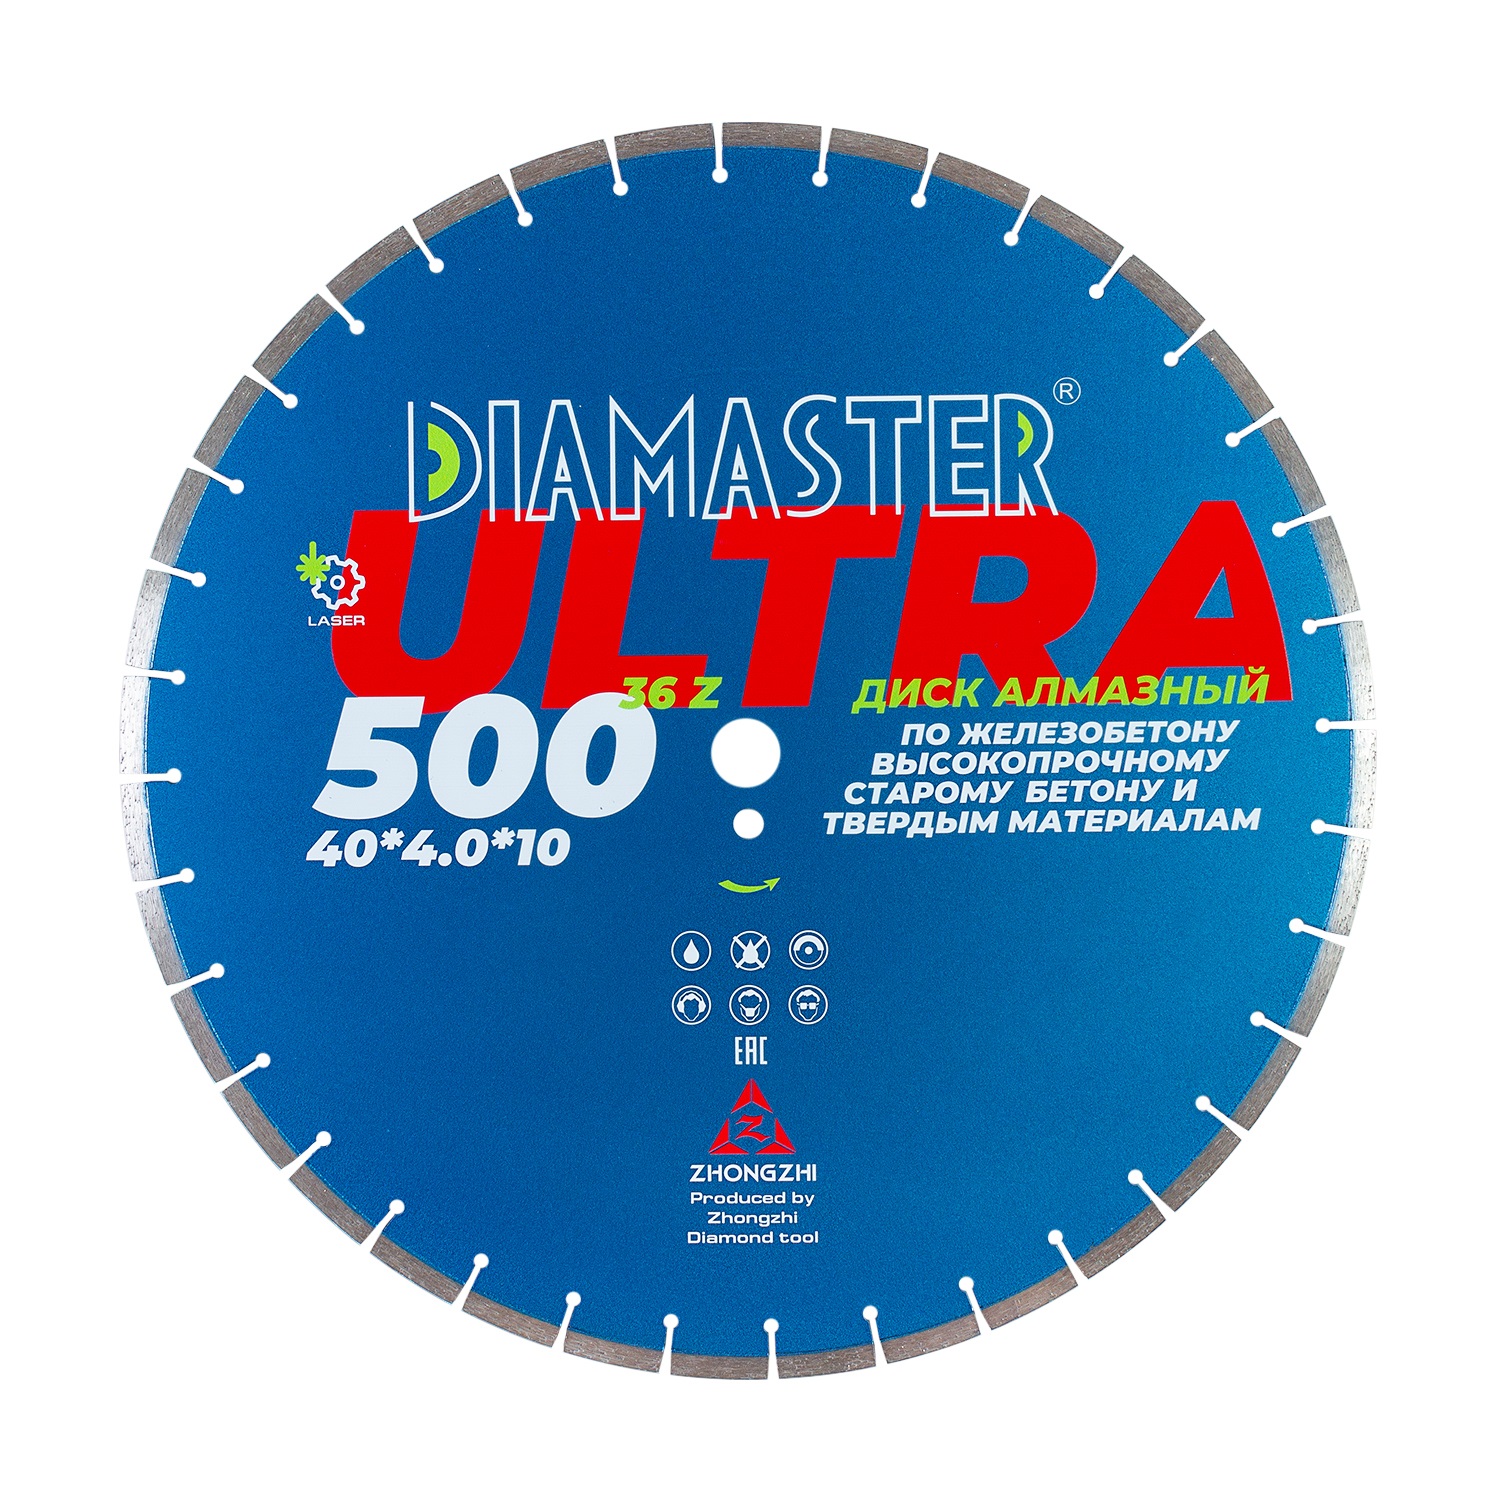 Диск сегментный Laser ULTRA д.500*2,8*25,4 (40*4,0*10)мм | 36z/железобетон/wet/dry DIAMASTER диск сегментный laser arix razor д 400 2 8 25 4 40 3 6 12 мм 24z железобетон wet dry diamaster